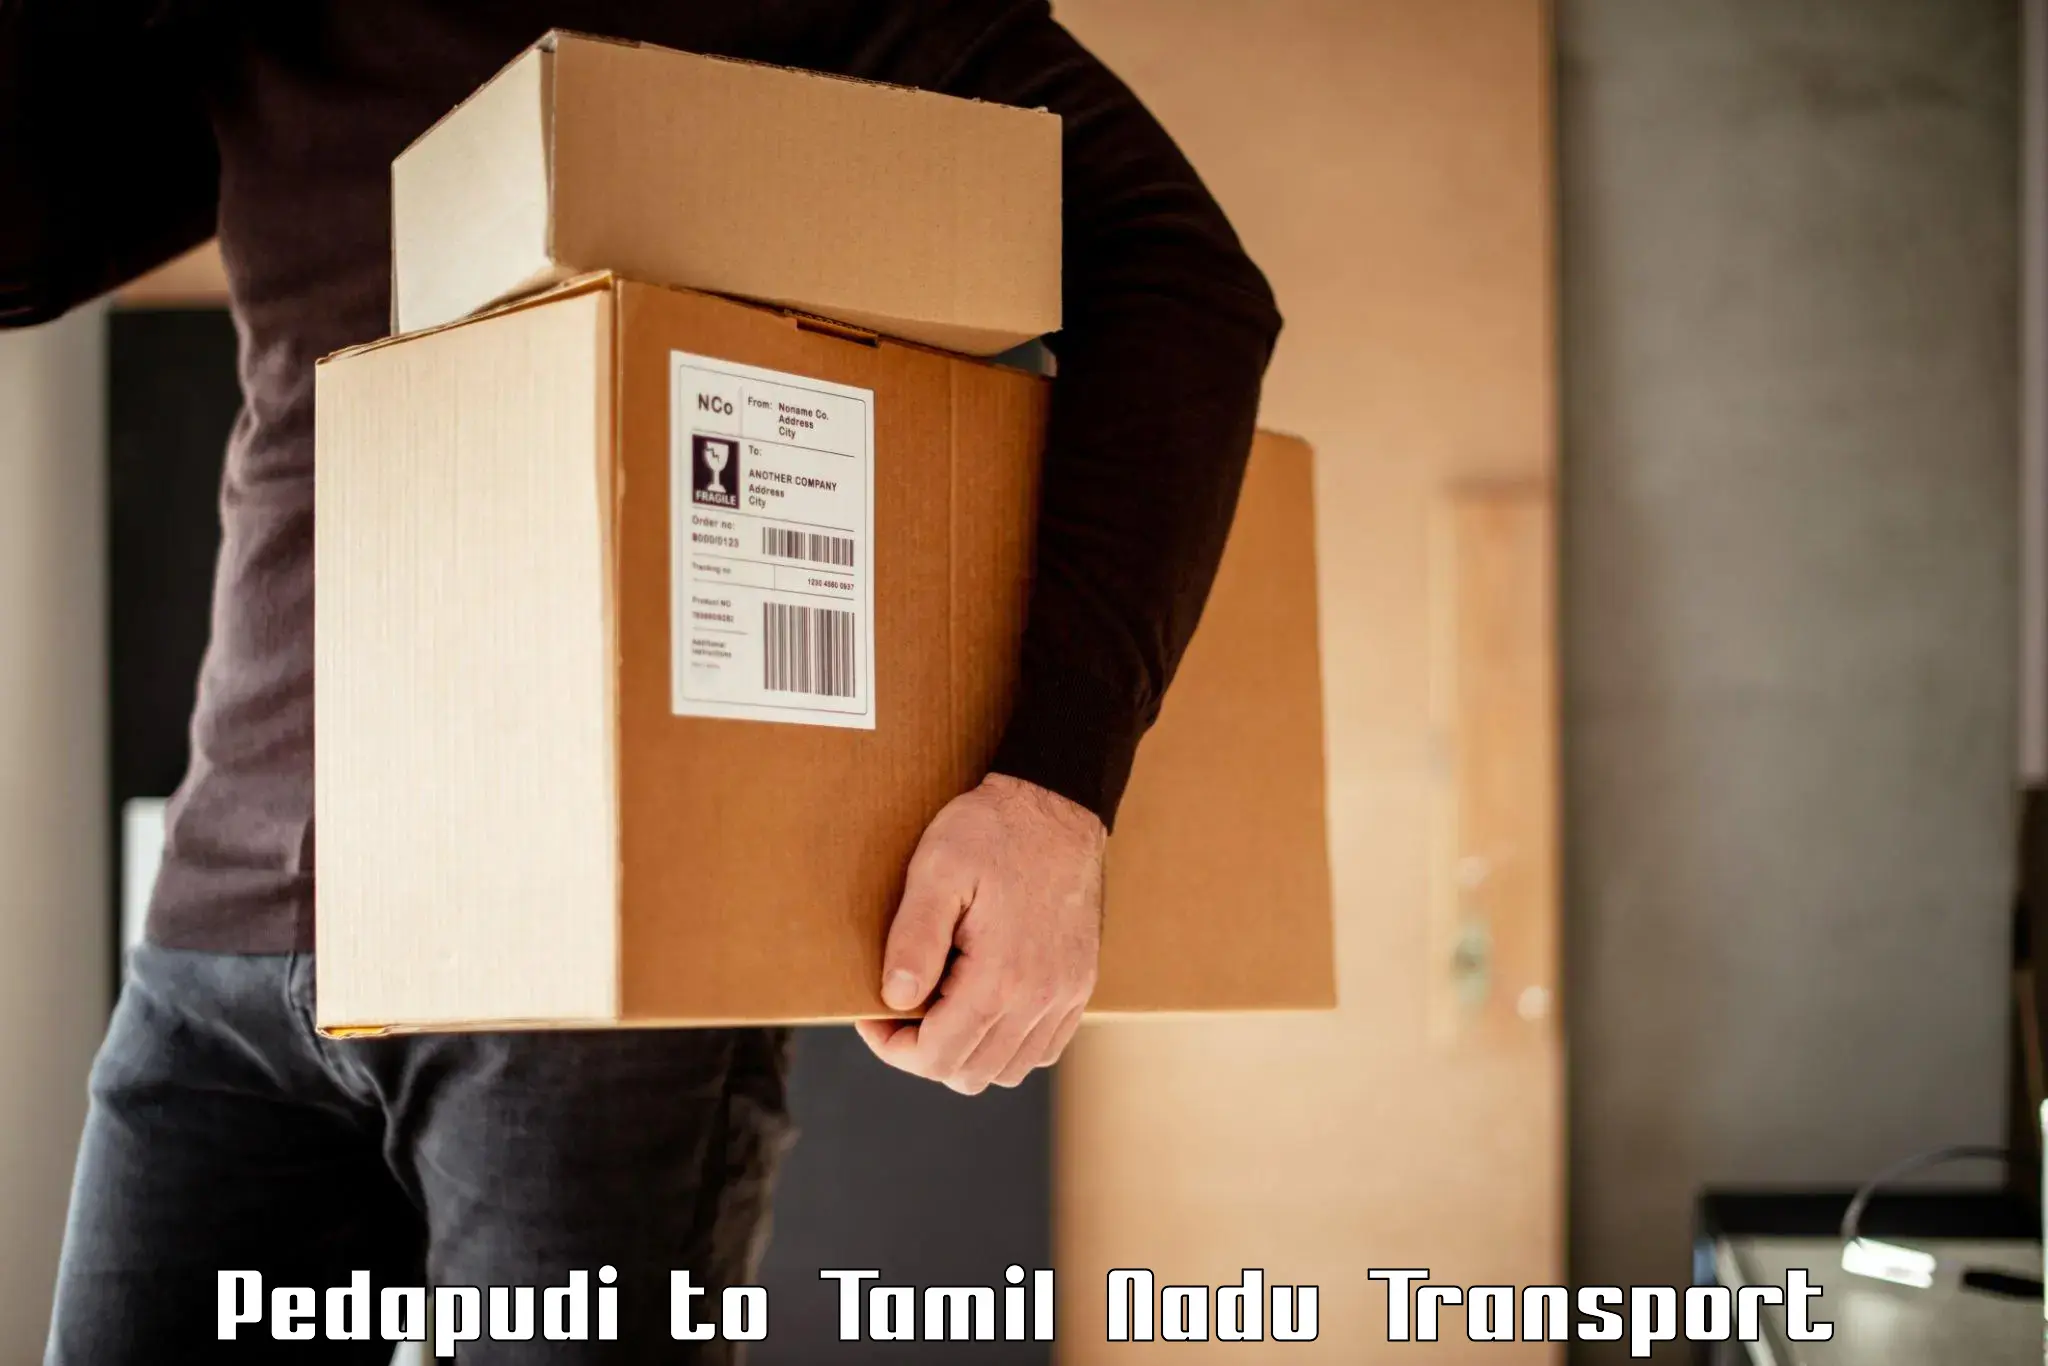 Scooty parcel in Pedapudi to Tamil Nadu